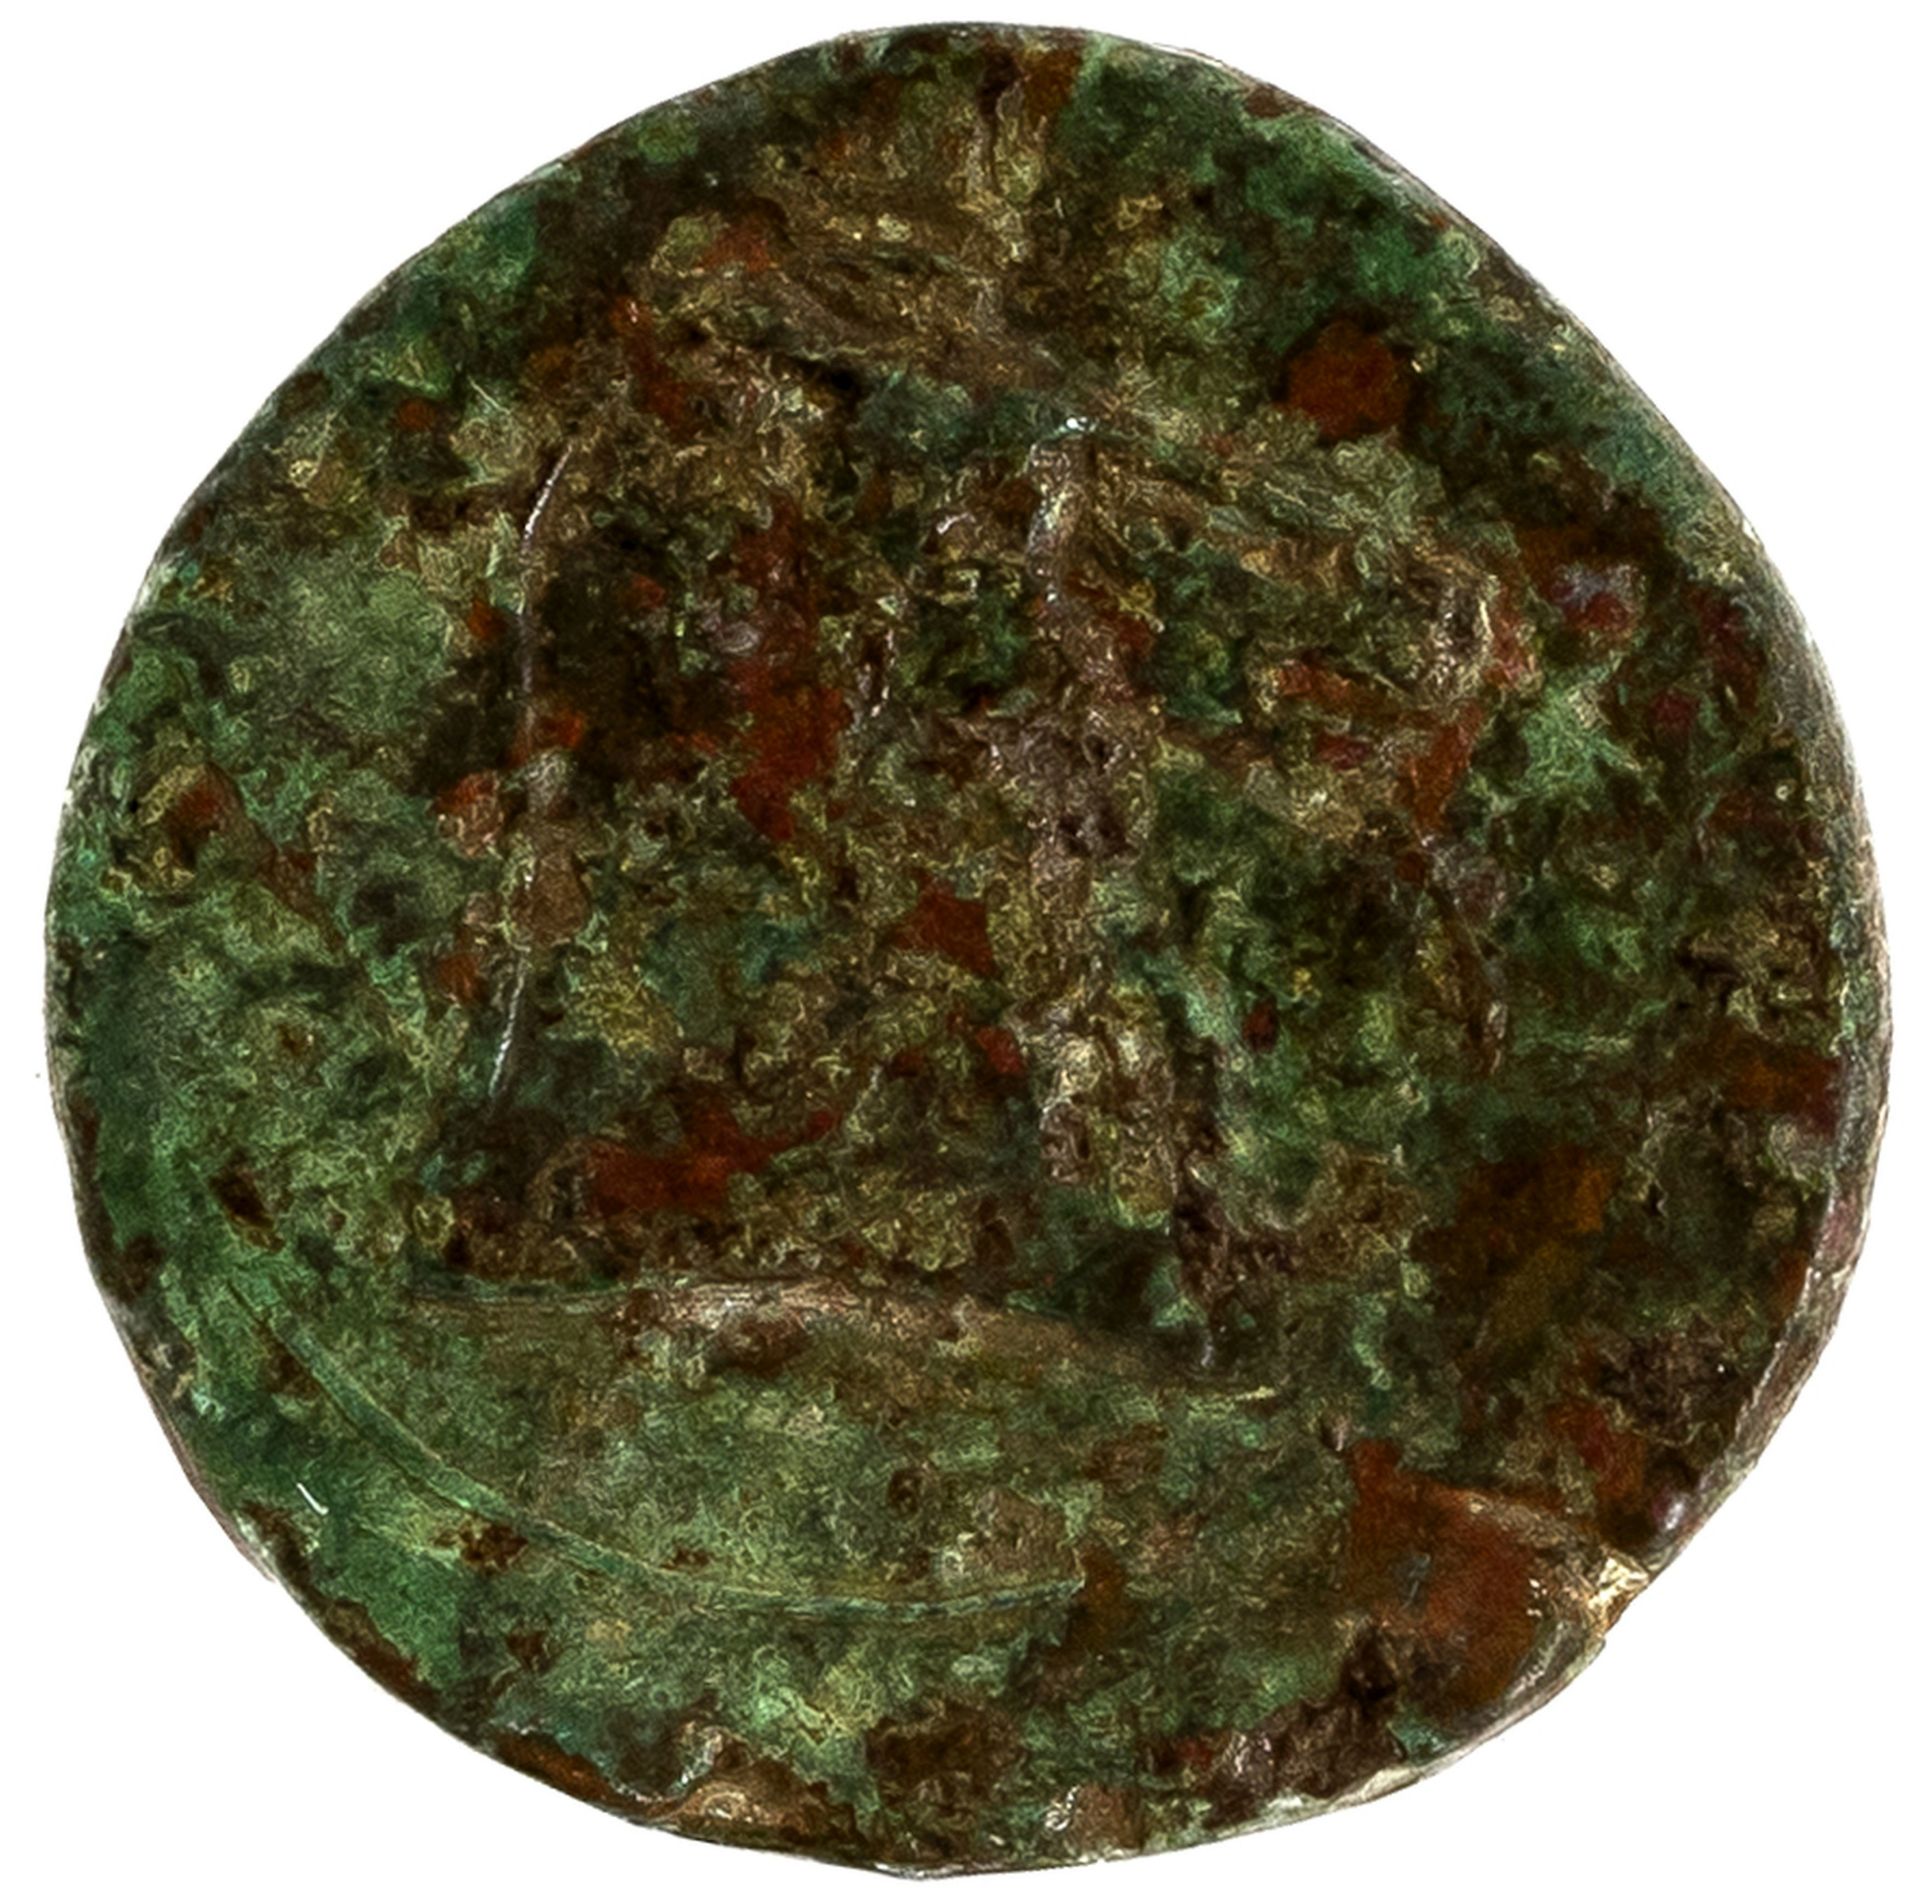 Karthagisches Reich, Provinz Sardinien | um 300 - 260 v. Chr. (?) - Image 3 of 3